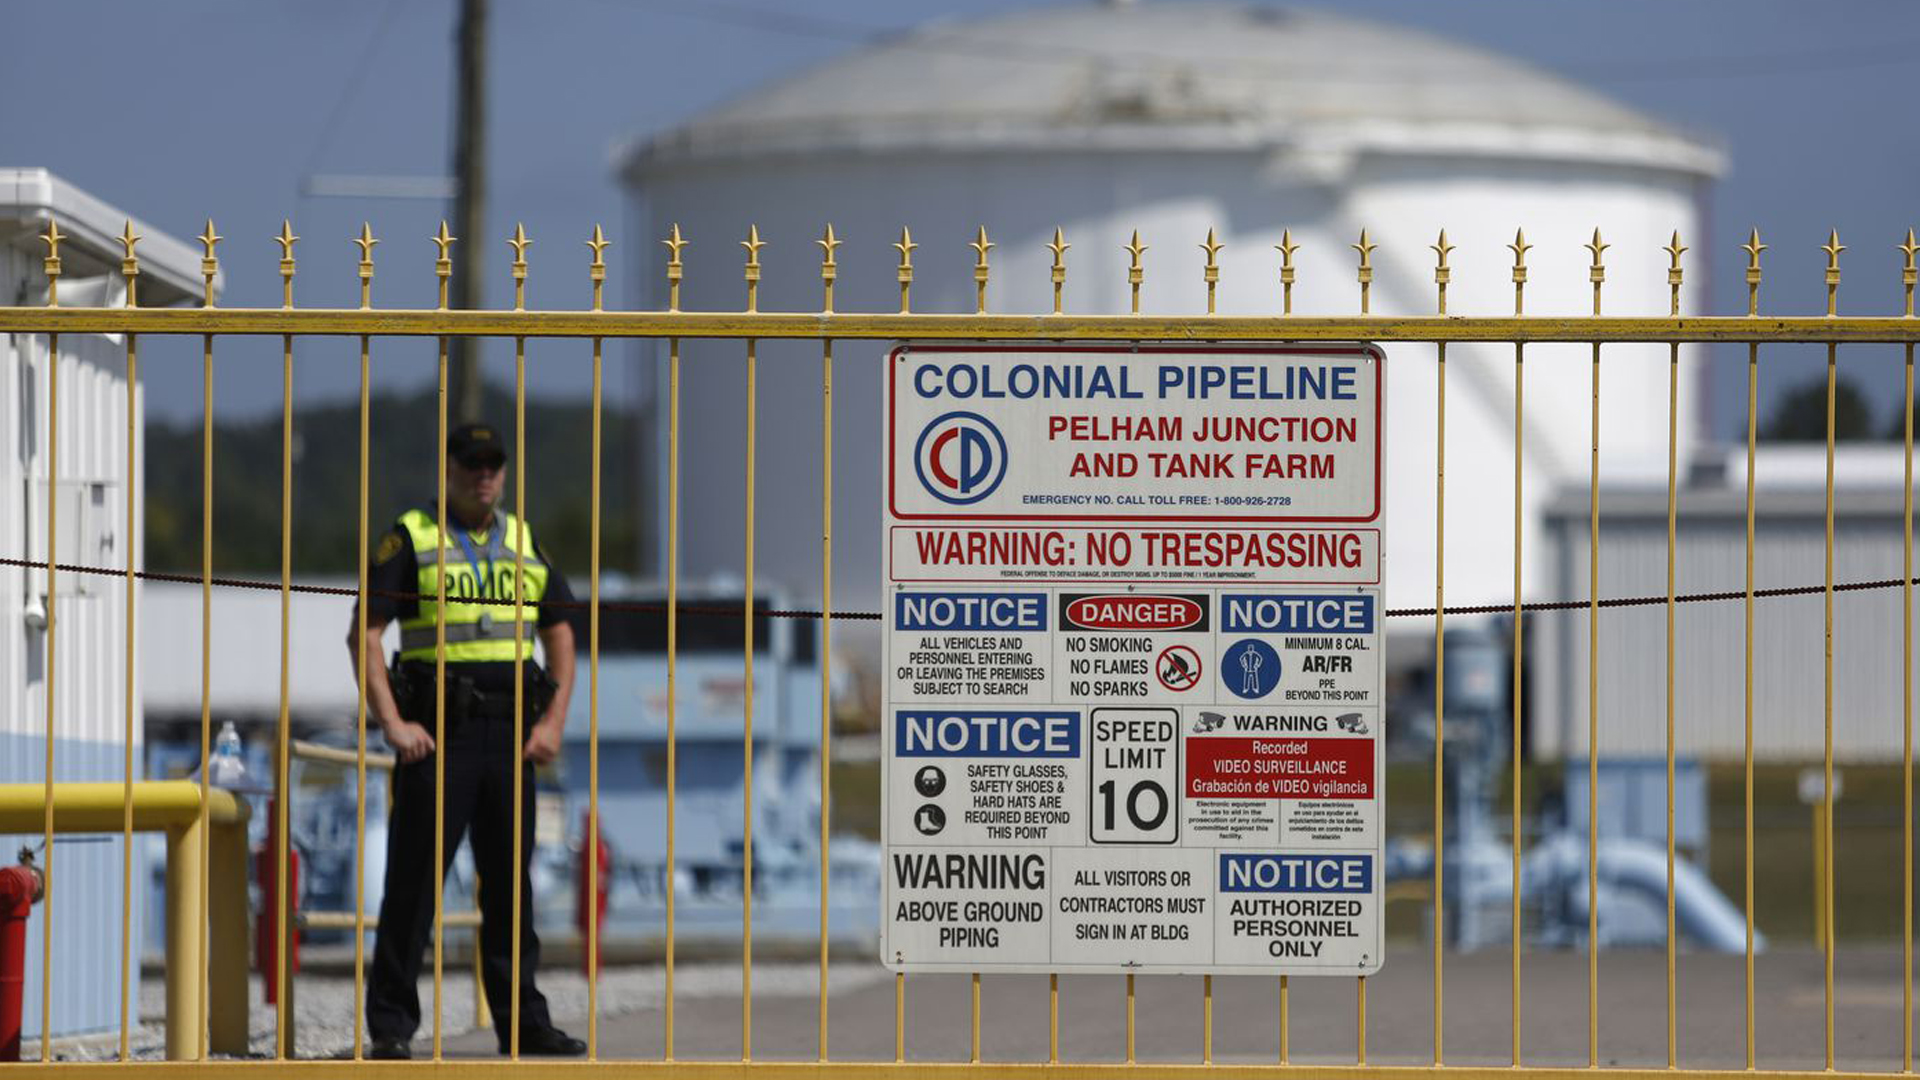 Colonial Pipeline cayó bajo el control del grupo criminal Darkside que solicitó una millonaria recompensa (Getty Images)